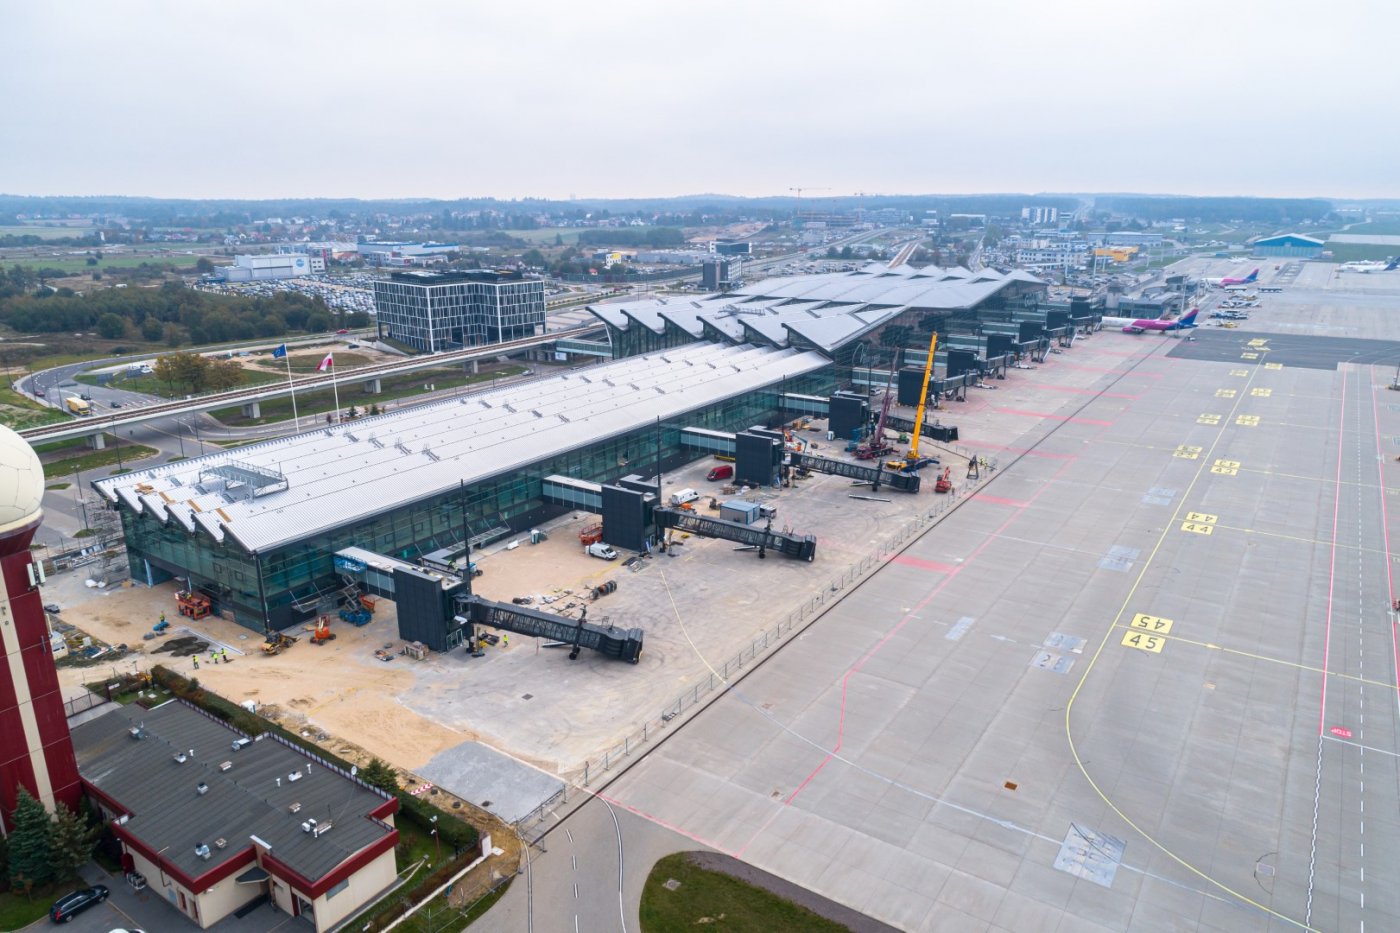 Zdjęcie lotnicze. Widoczny Port Lotniczy w Gdańsku. Rozbudowany budynek terminala, dźwigi montują rękawy pasażerskie. Płyta lotniska